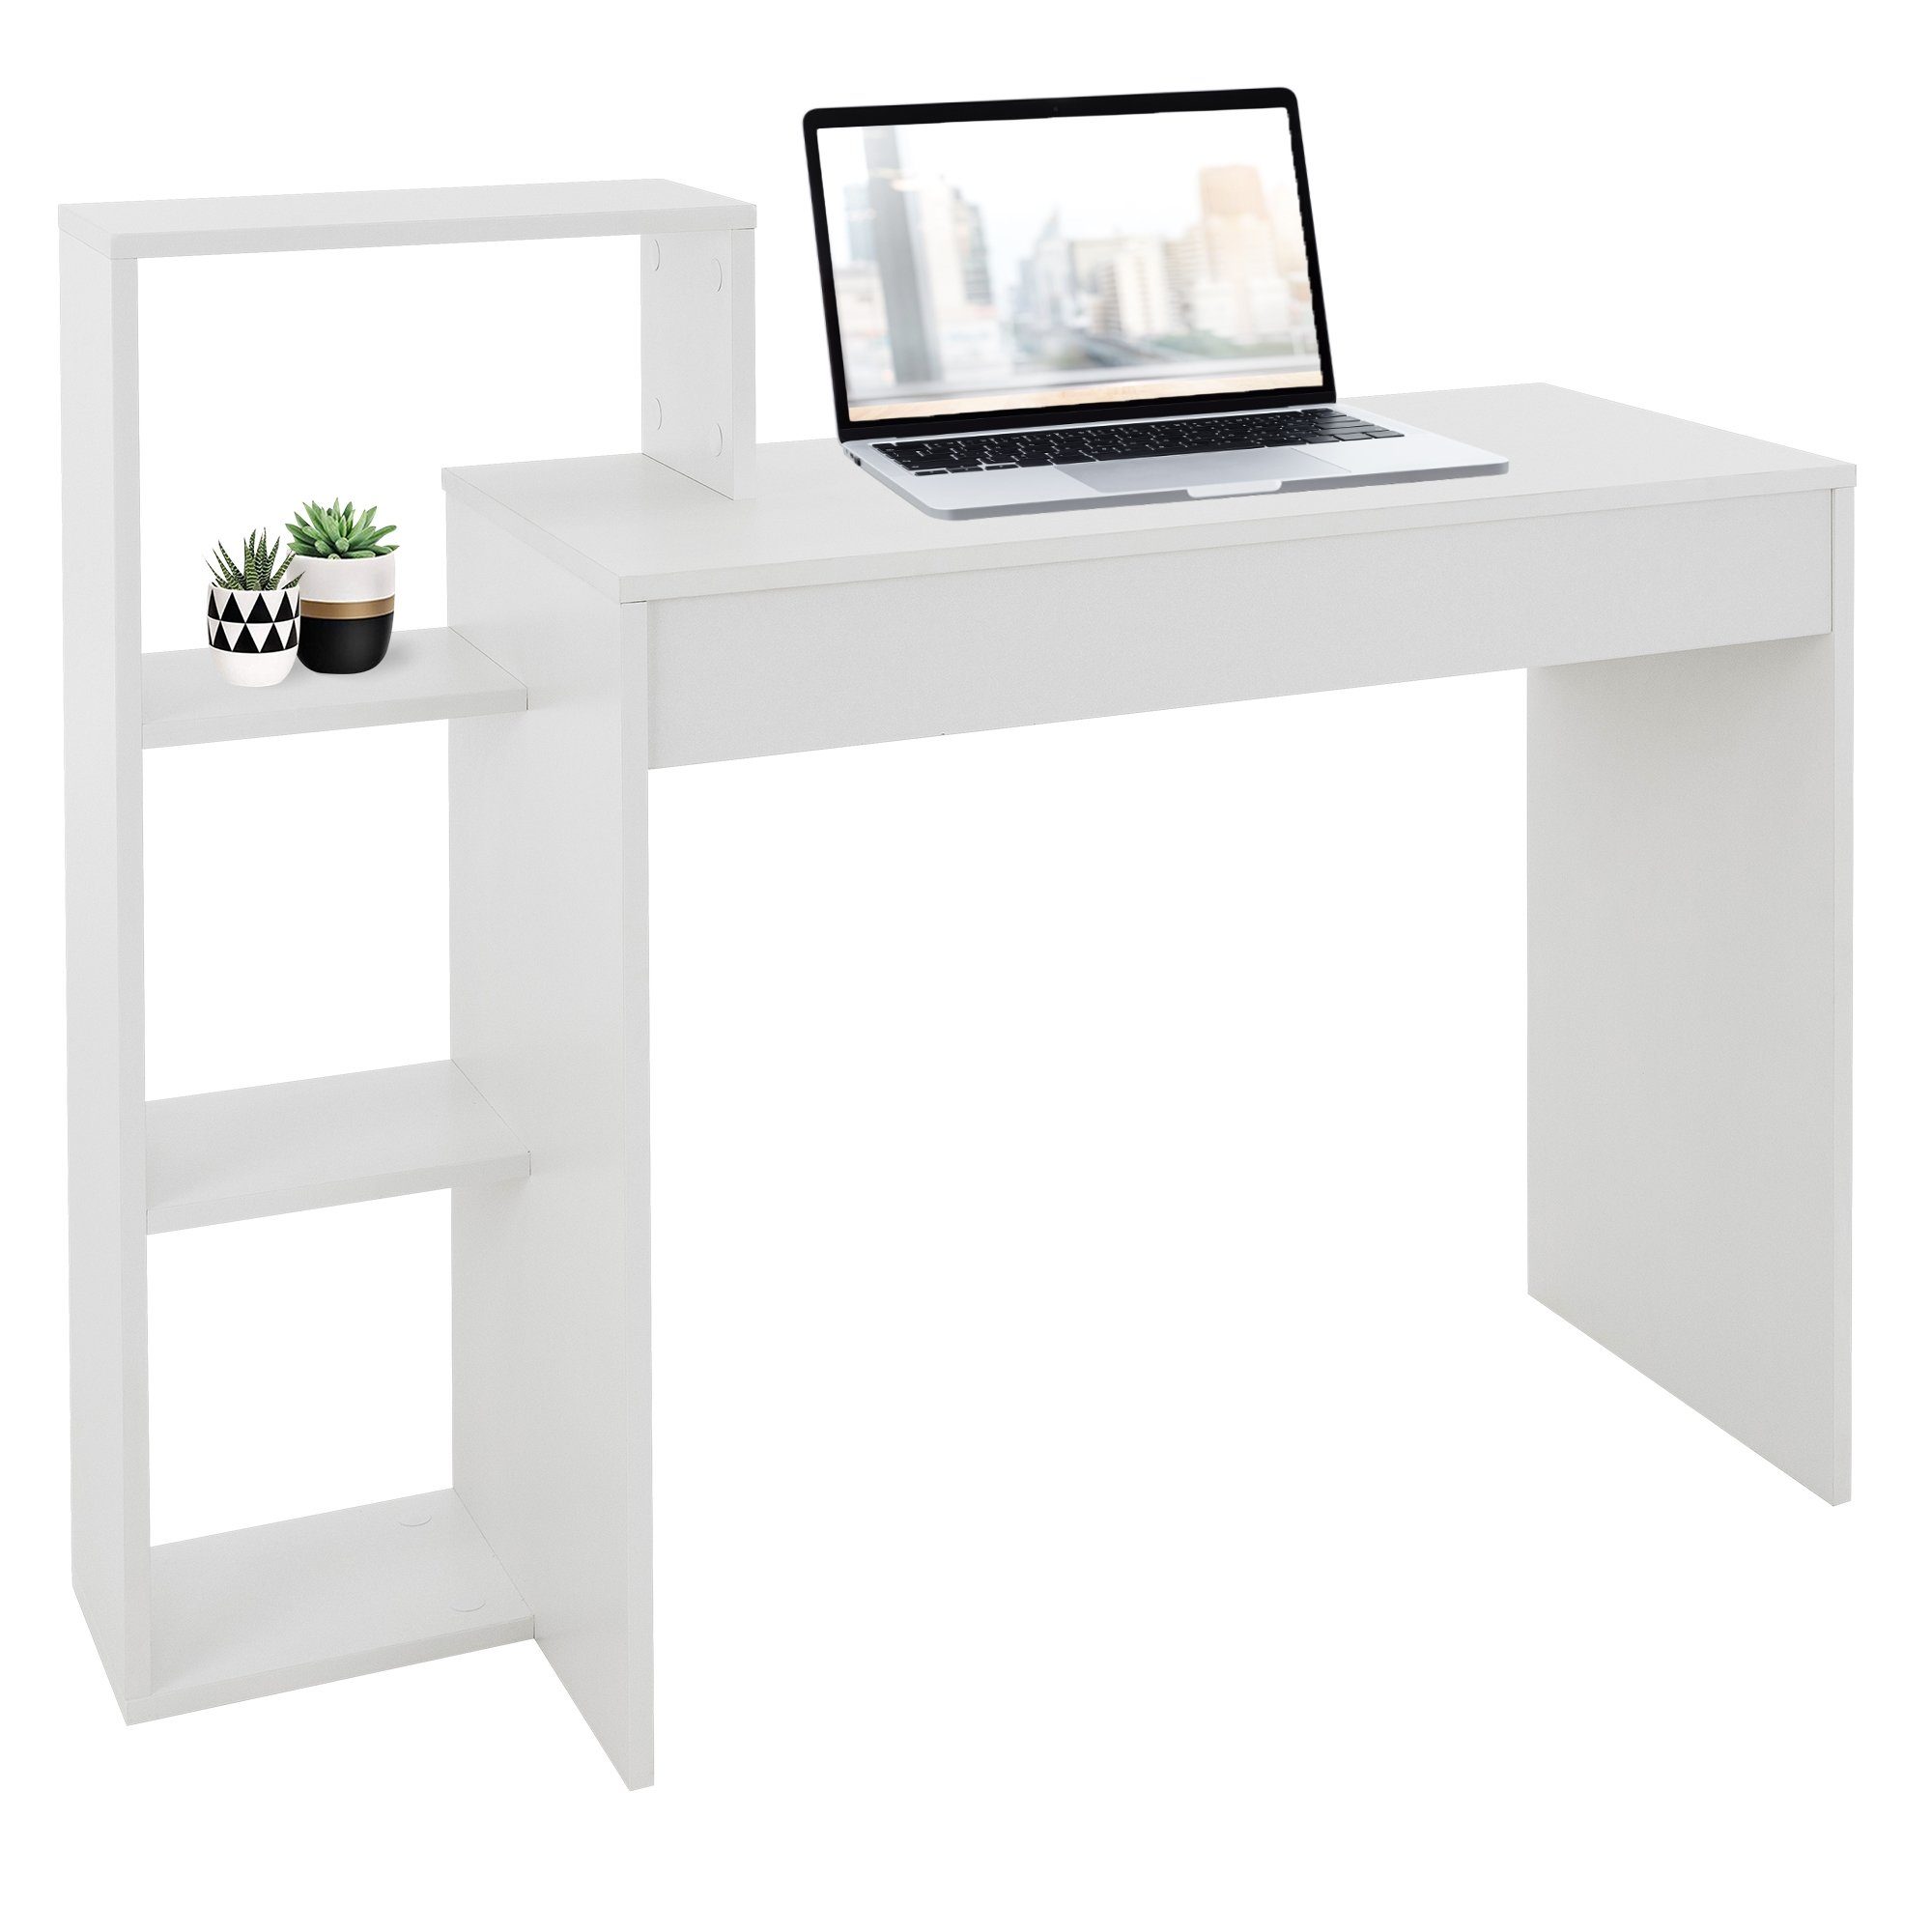 ML-DESIGN Schreibtisch Arbeitstisch Bürotisch Computertisch Laptoptisch PC Laptop Tisch, Weiß 3 Einlegeböden 110x72x40cm Holz 2-in-1 System